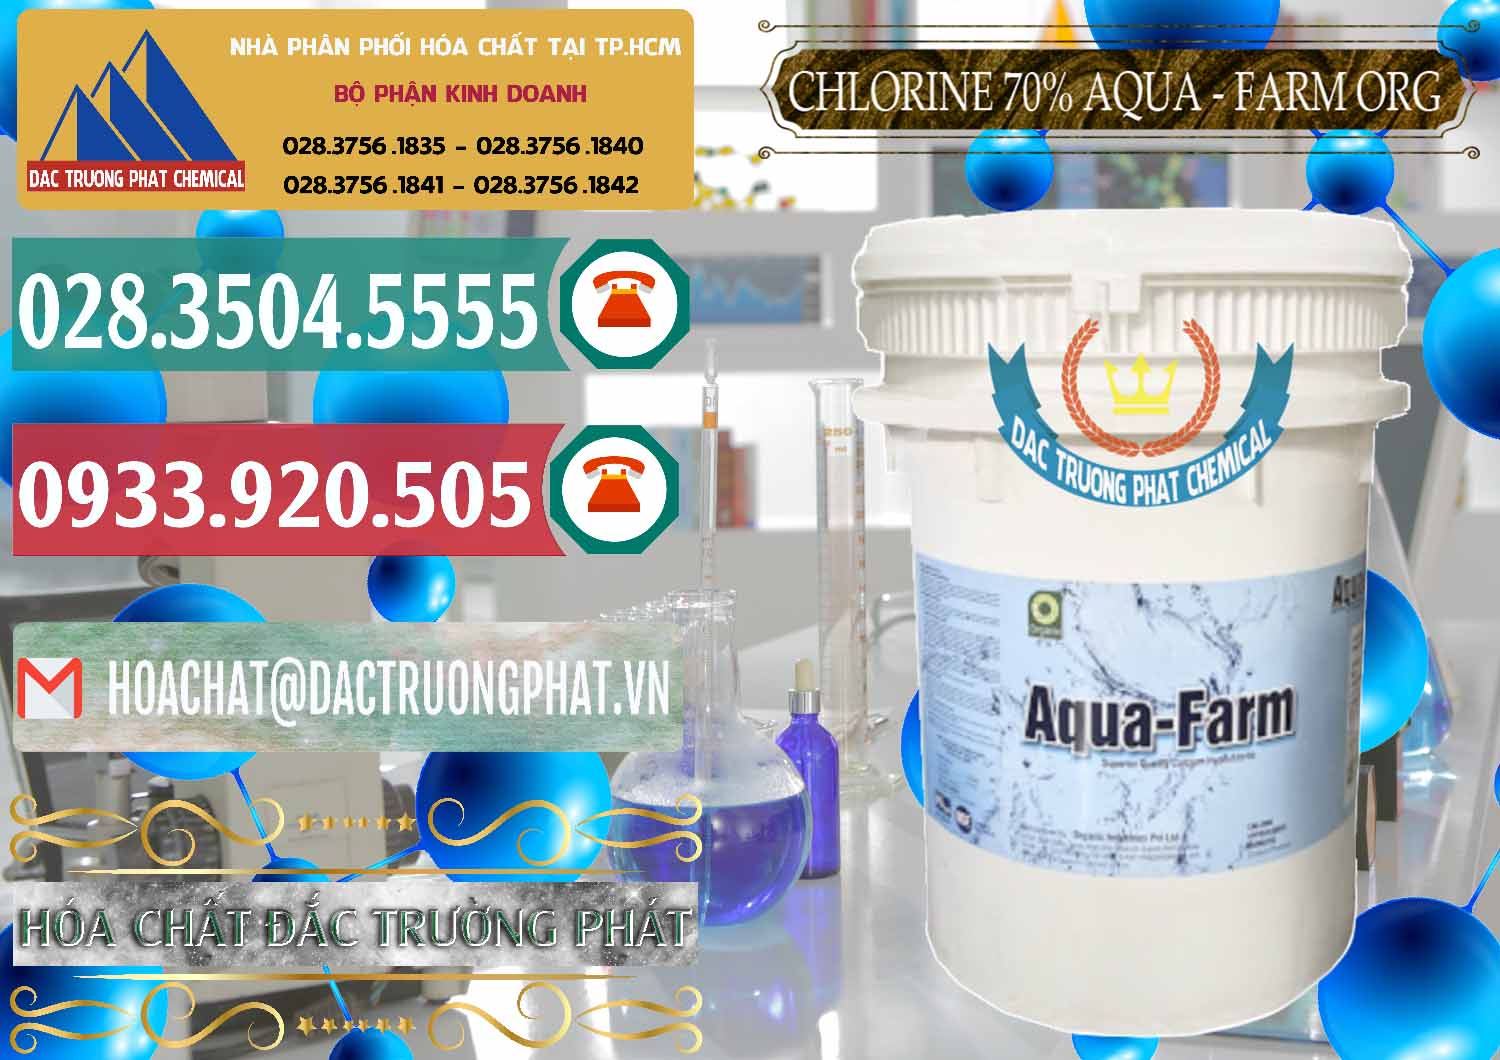 Kinh doanh _ bán Chlorine – Clorin 70% Aqua - Farm ORG Organic Ấn Độ India - 0246 - Công ty cung cấp _ phân phối hóa chất tại TP.HCM - muabanhoachat.vn